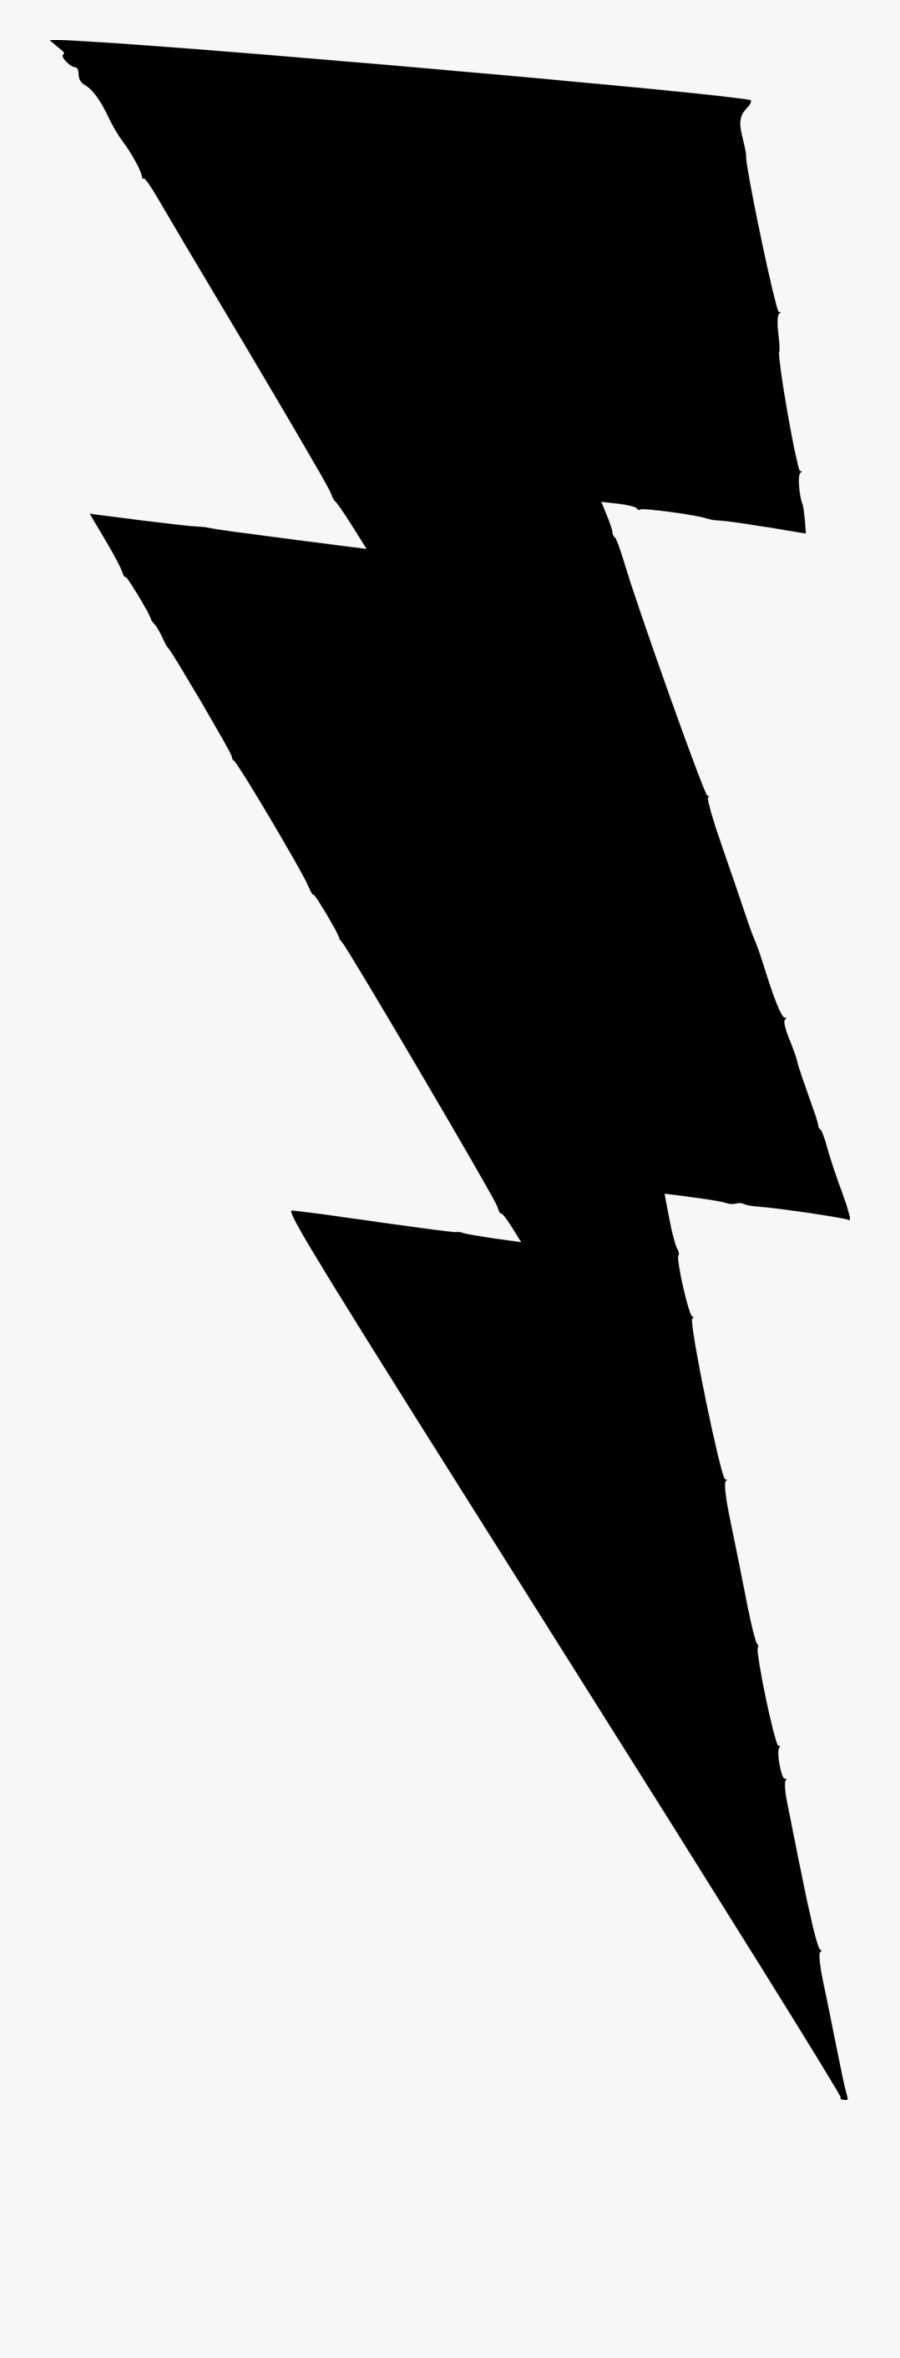 Transparent White Lightning Bolt Png - Lightning Bolt Clip Art, Transparent Clipart